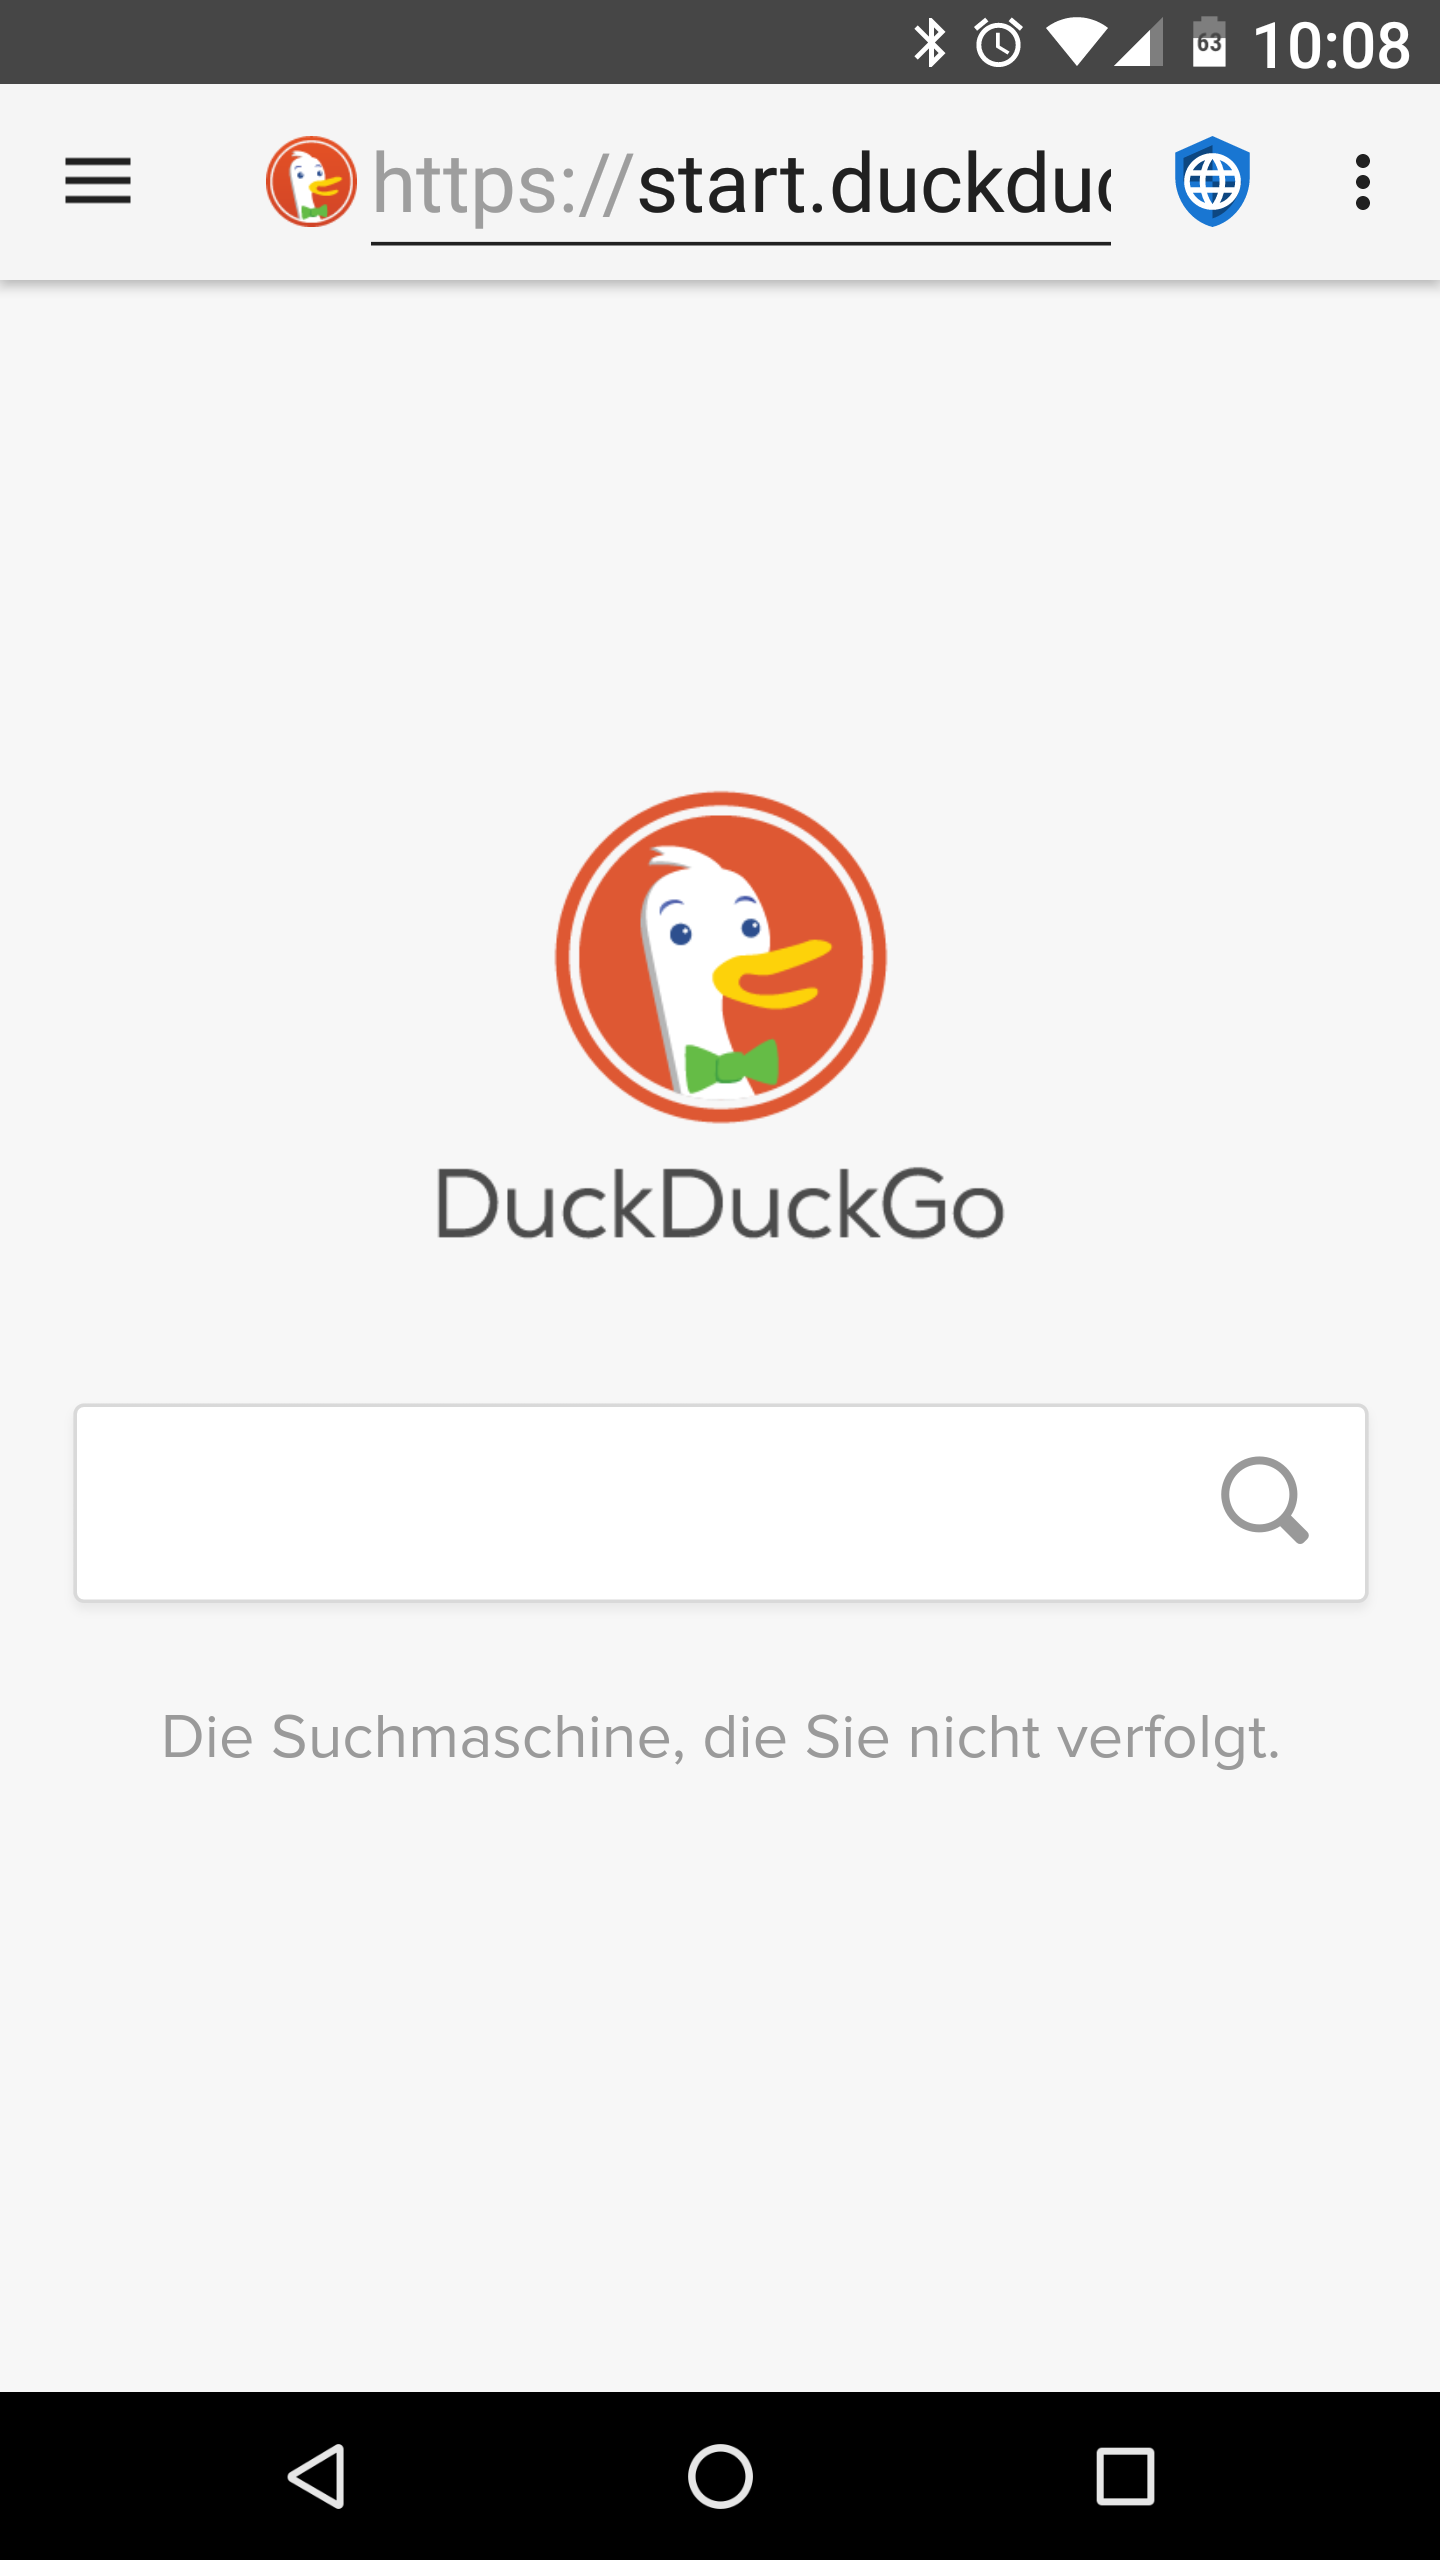 fastlane/metadata/android/de-DE/images/phoneScreenshots/01-DuckDuckGo.png